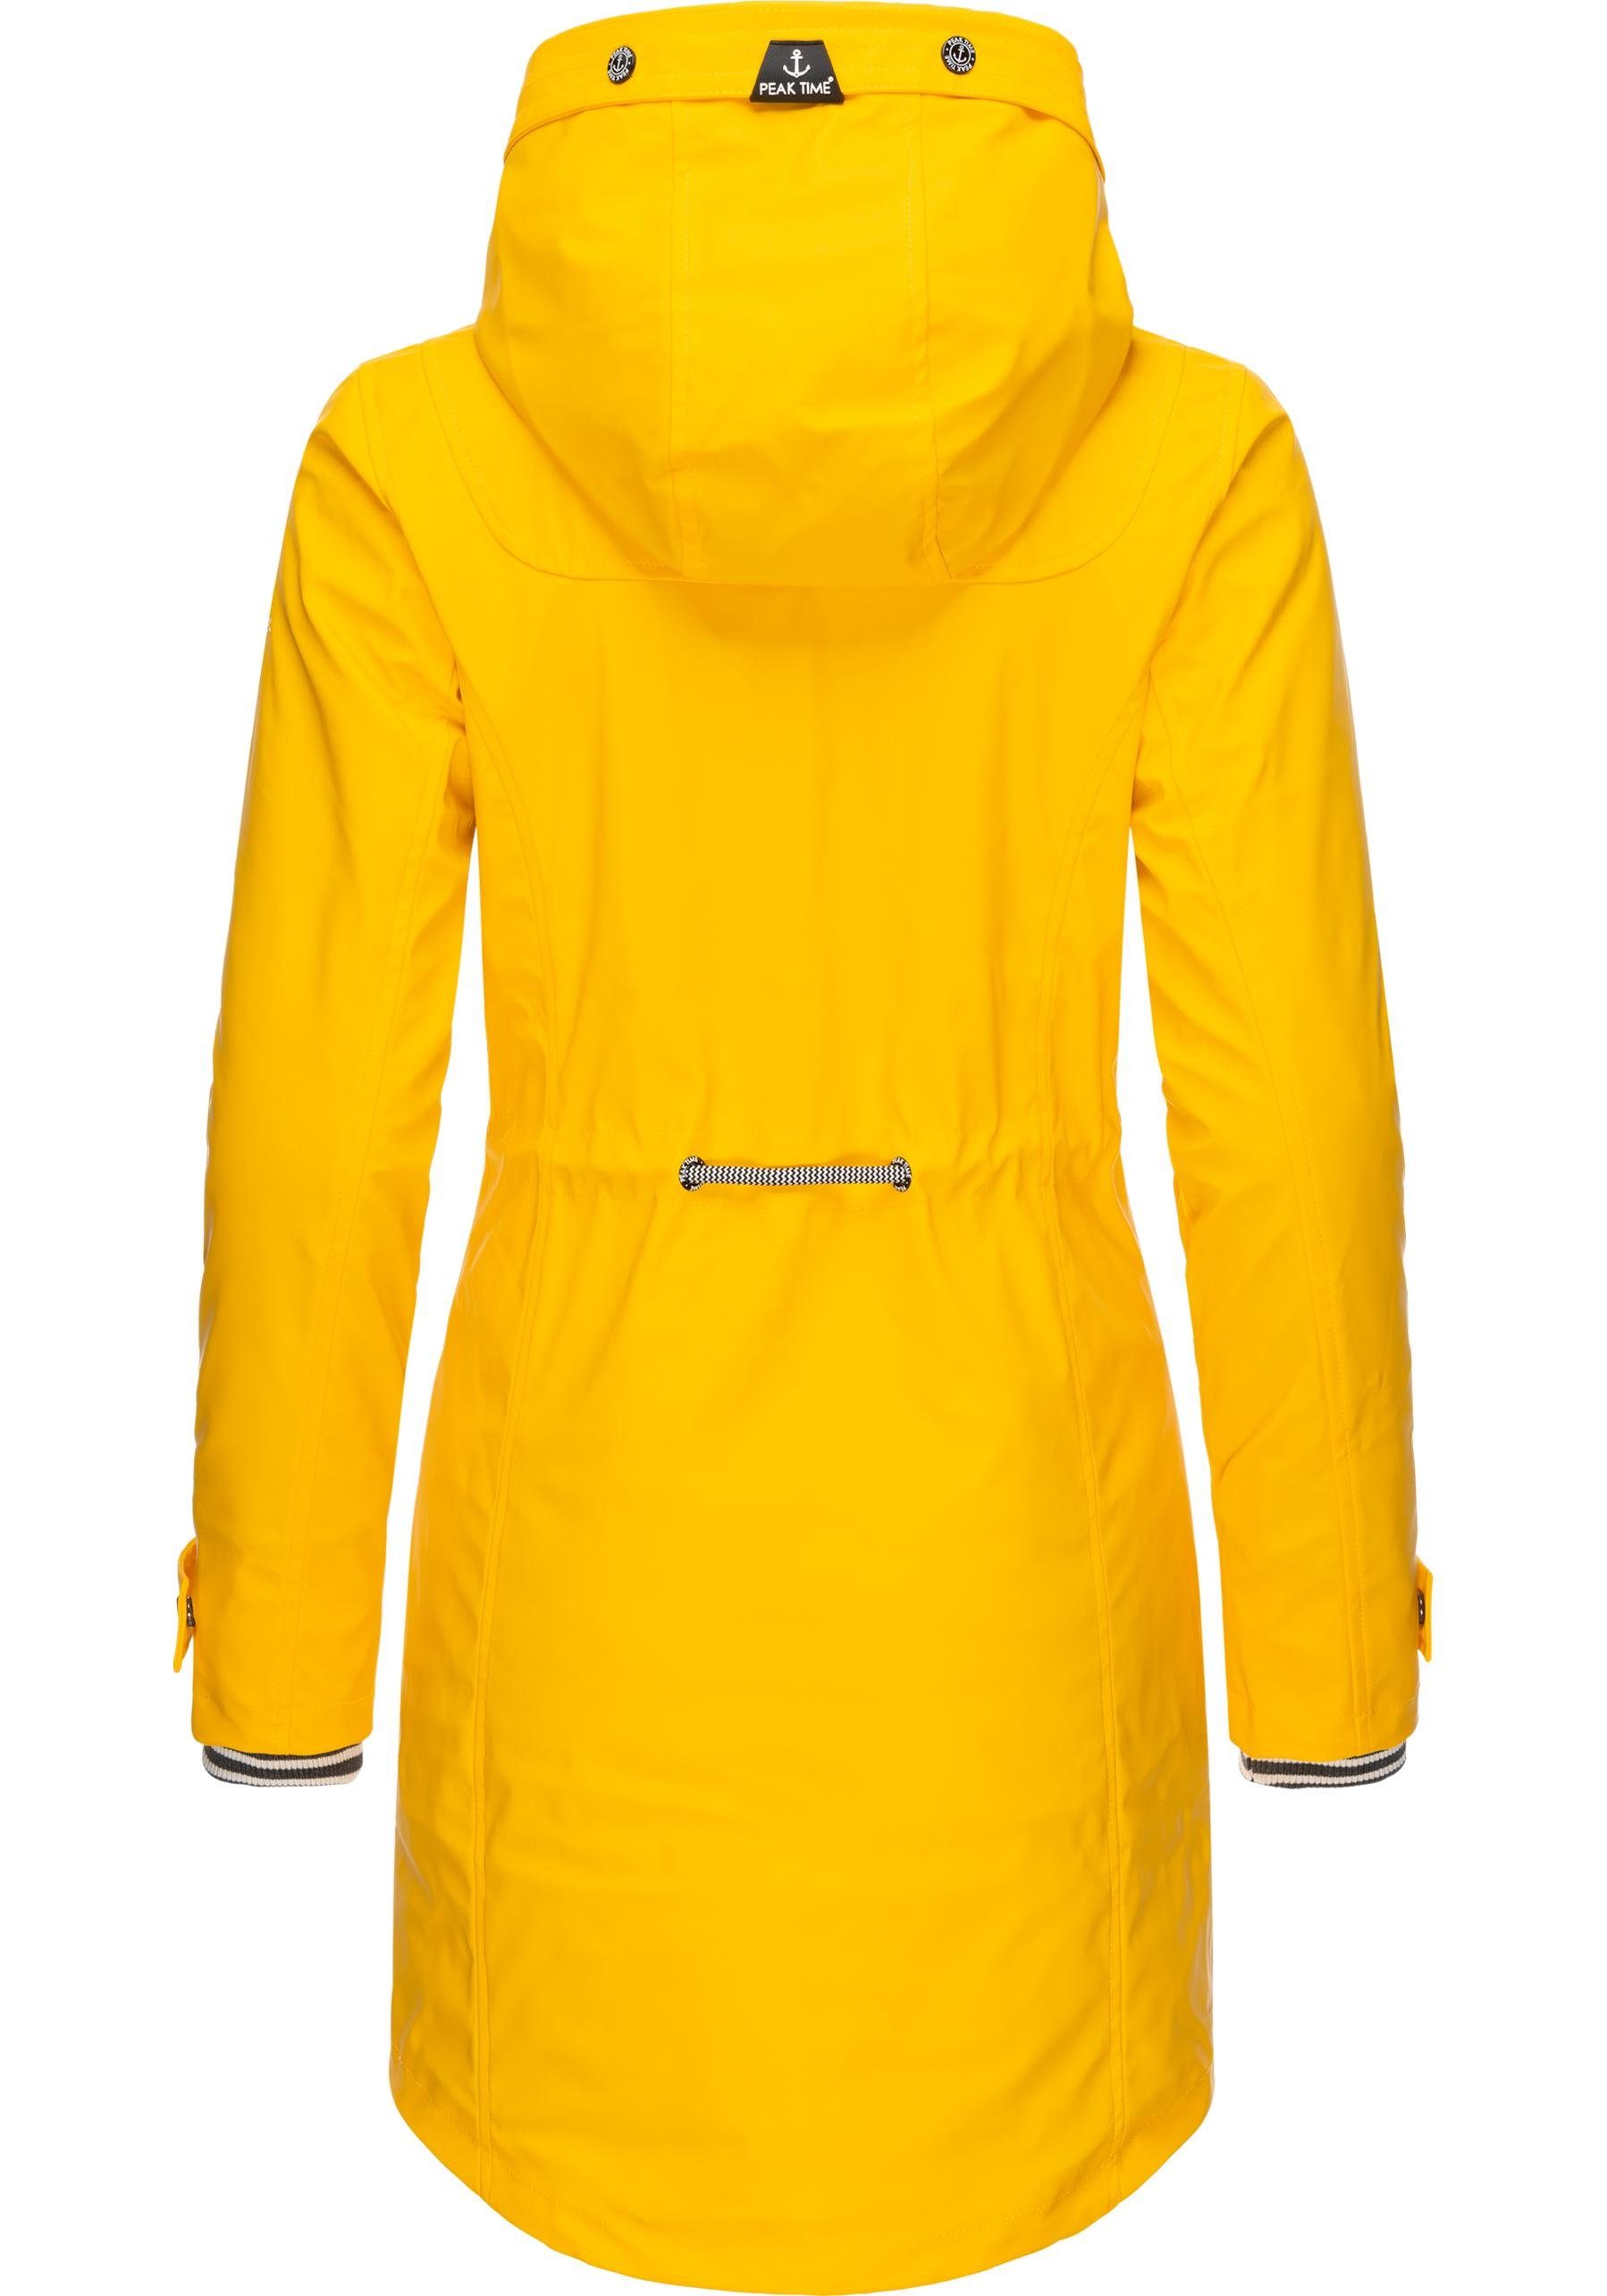 TIME Regenmantel Damen Regenjacke taillierter PEAK stylisch für dottergelb L60042